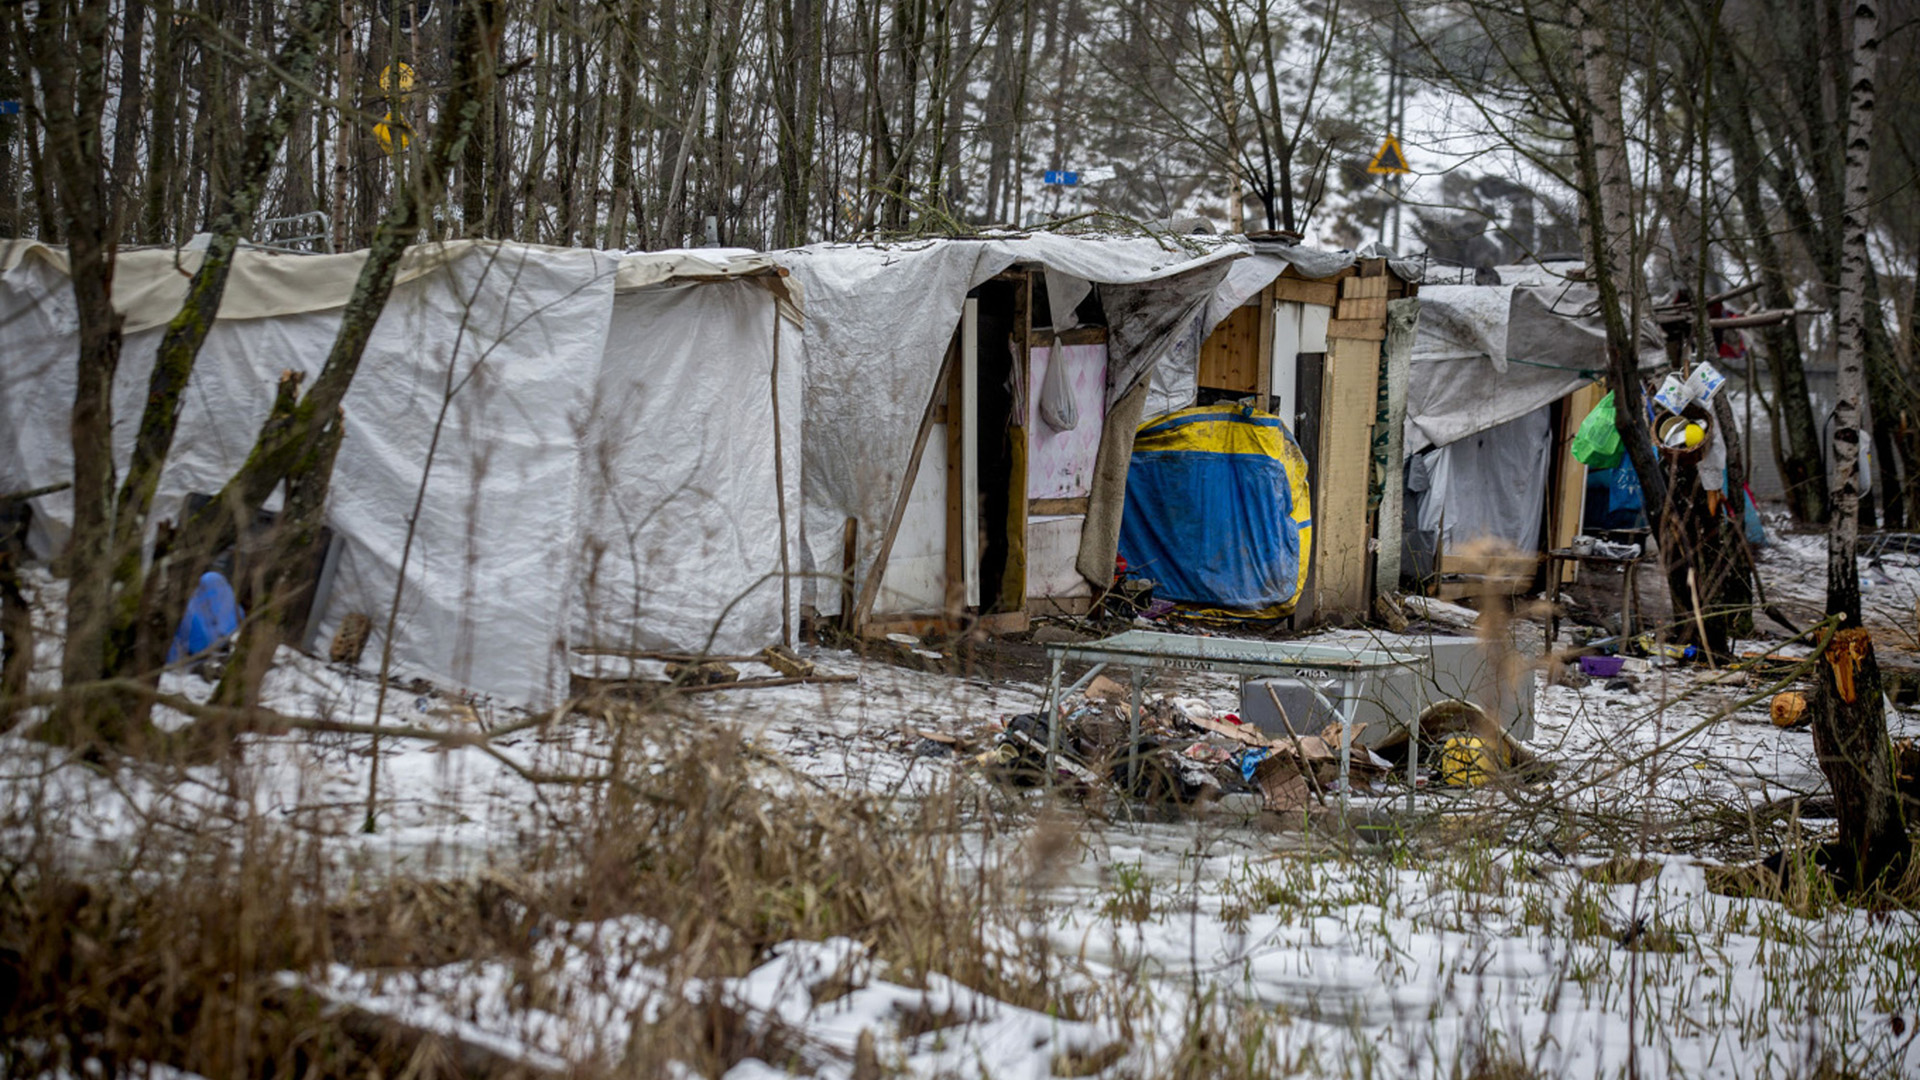 Un tren de pasajeros pasa por delante de los refugios improvisados de los migrantes en un campamento temporal en una ladera boscosa de Estocolmo, Suecia, en febrero de 2014 (Fotógrafo: Casper Hedberg/Bloomberg)